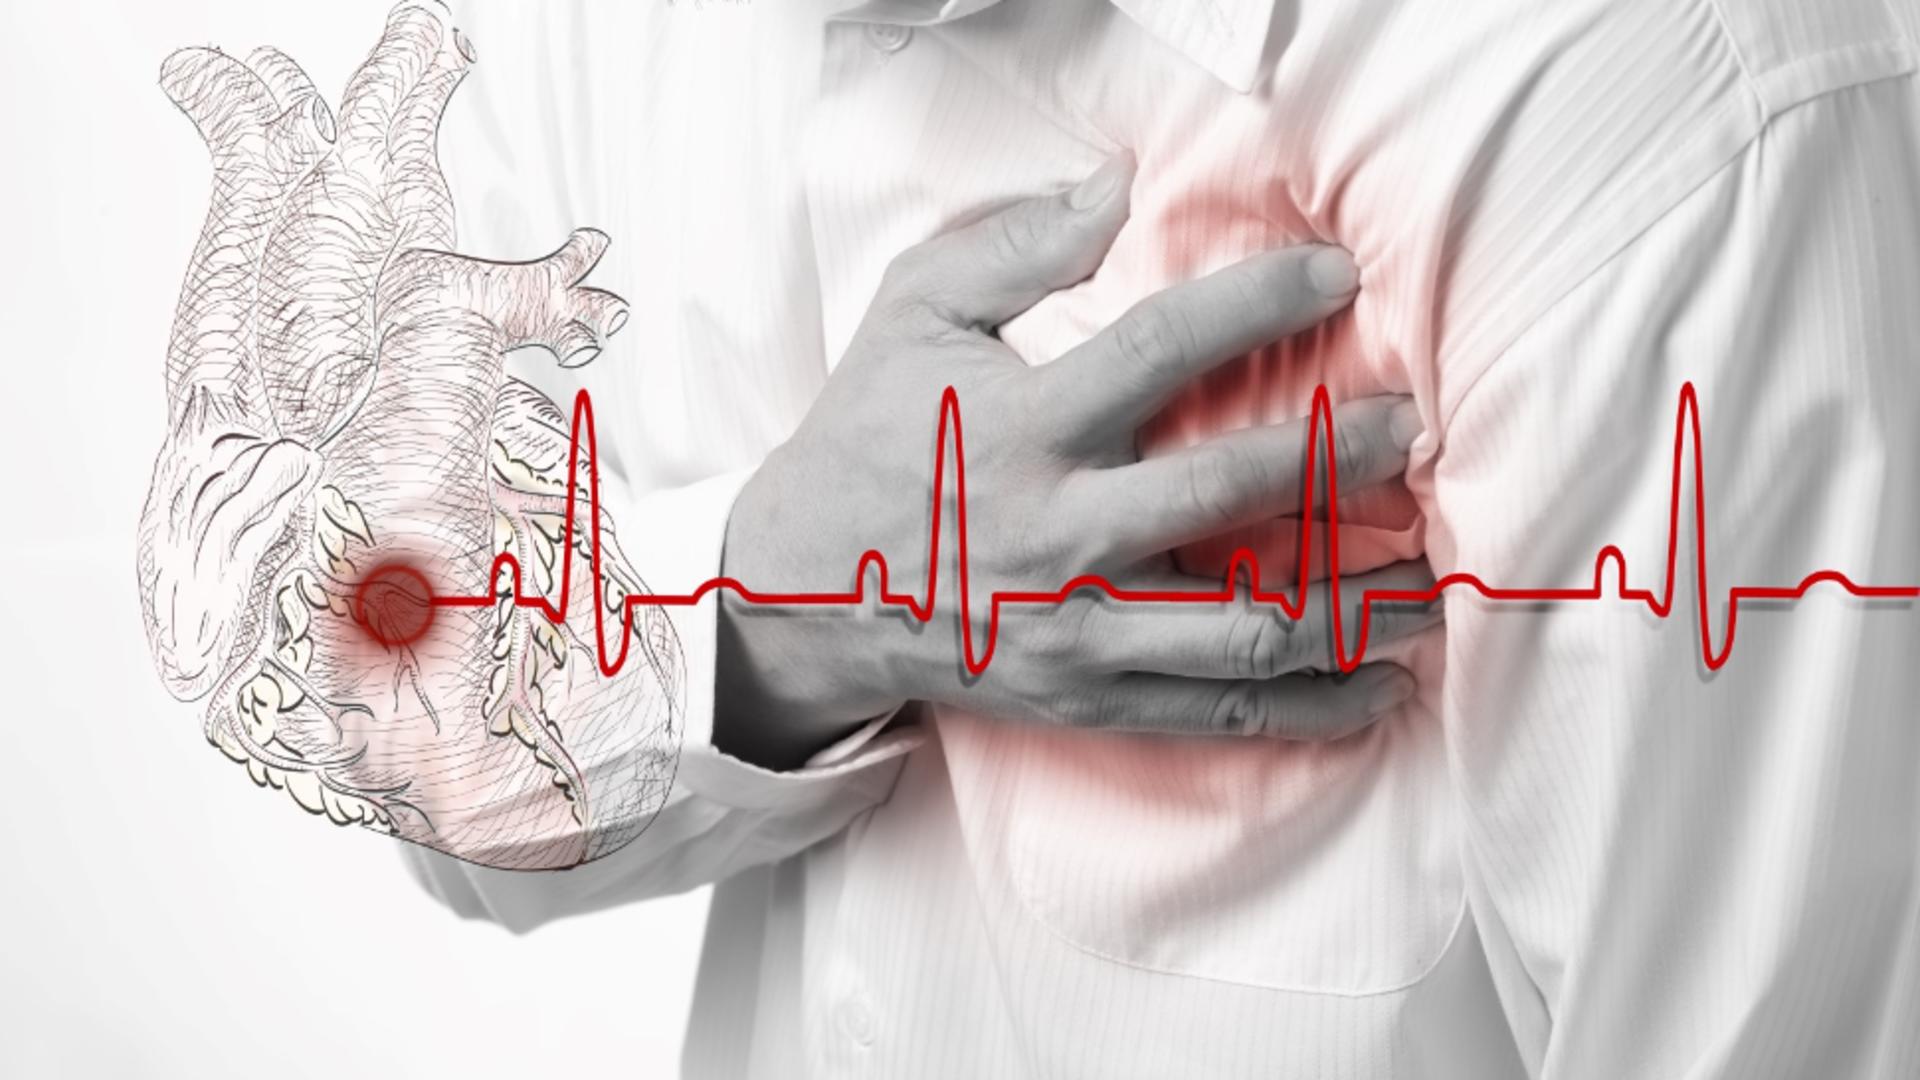 SIMPTOMELE pe care le ignori până când e prea târziu: Primele semne ale insuficienței cardiace - 9 din 10 români nu le știu